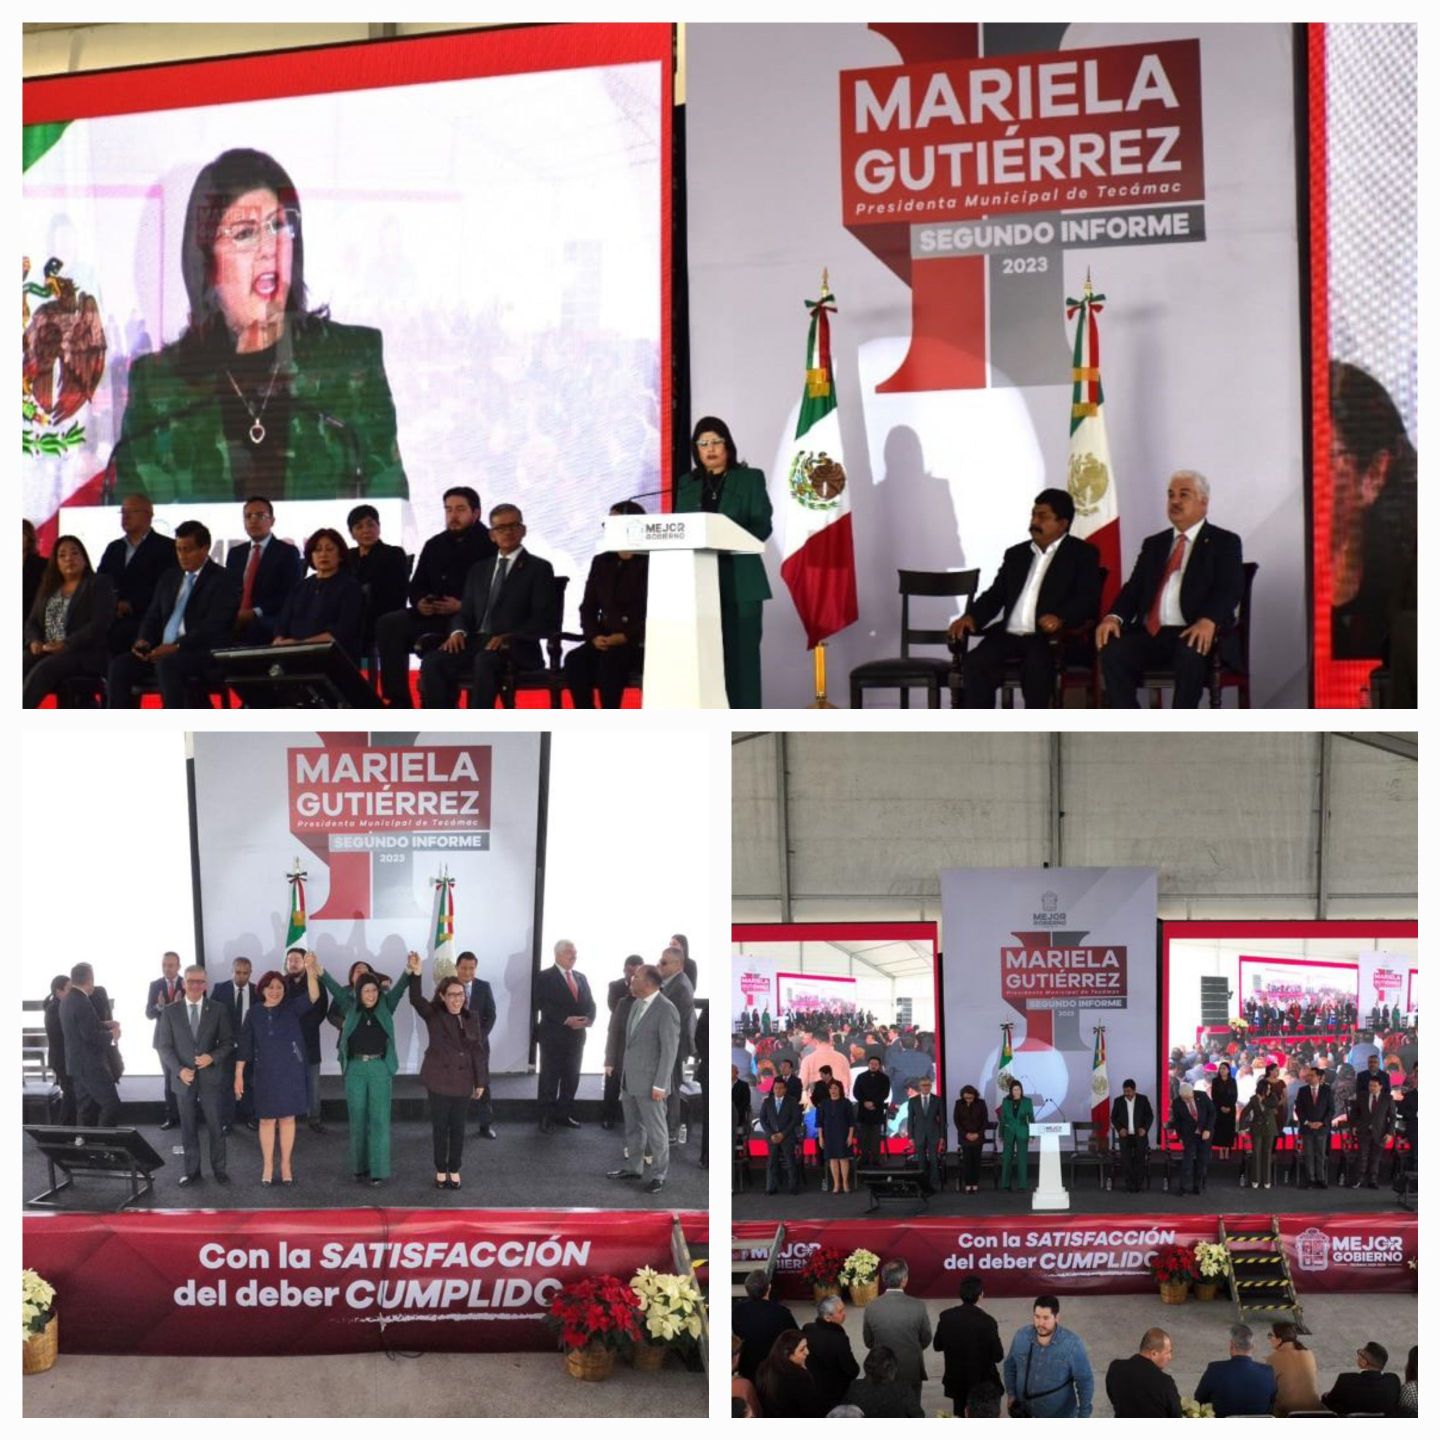 Mariela Gutiérrez rindió su
Segundo Informe de Gobierno